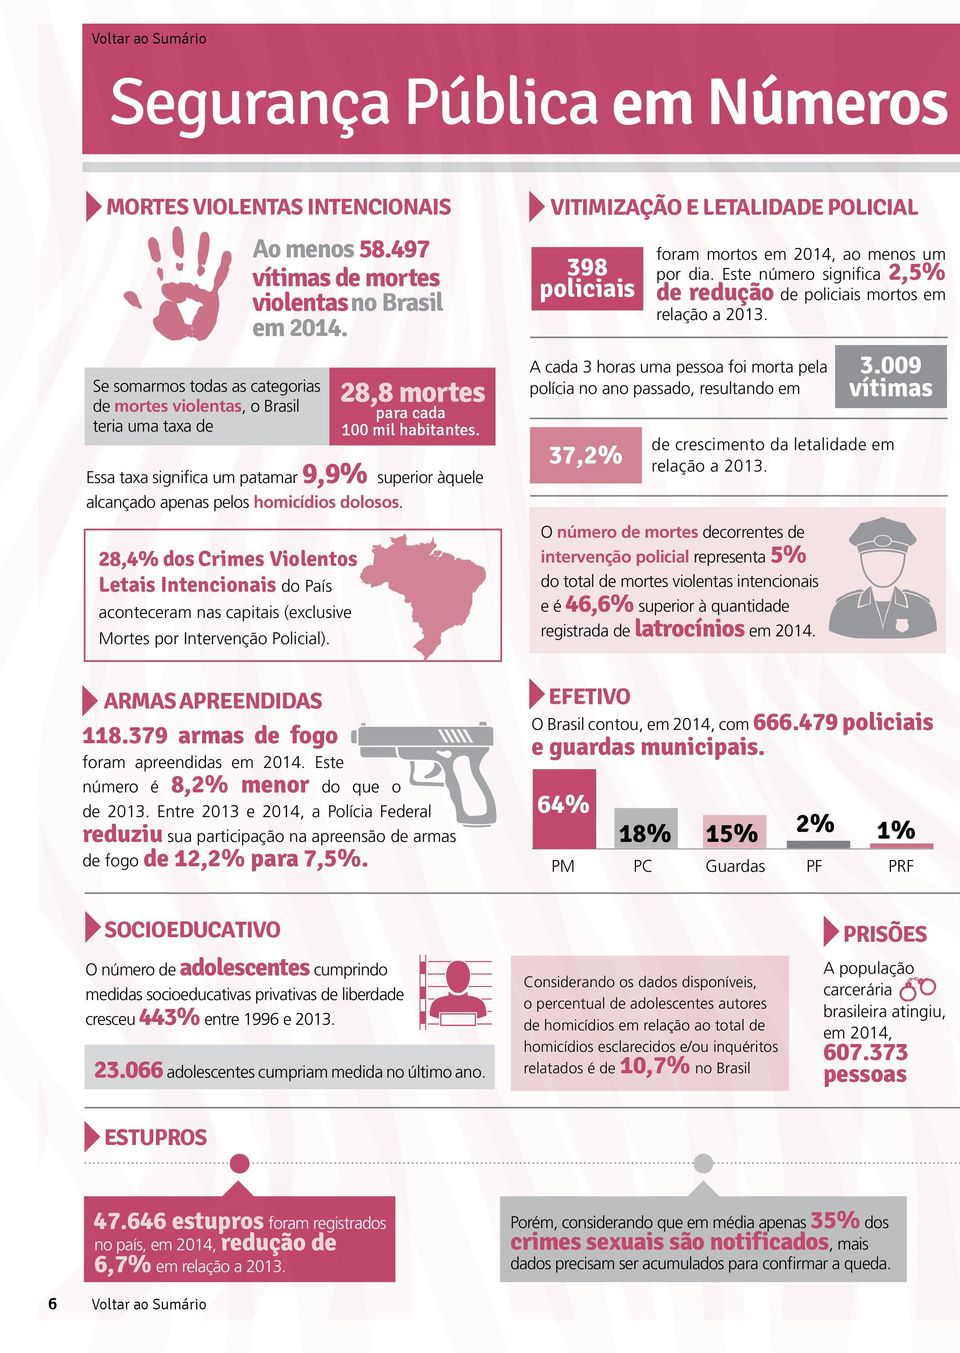 28,4% dos crimes Violentos letais intencionais do País aconteceram nas capitais (exclusive Mortes por Intervenção Policial). armas apreendidas 118.379 armas de fogo foram apreendidas em 2014.